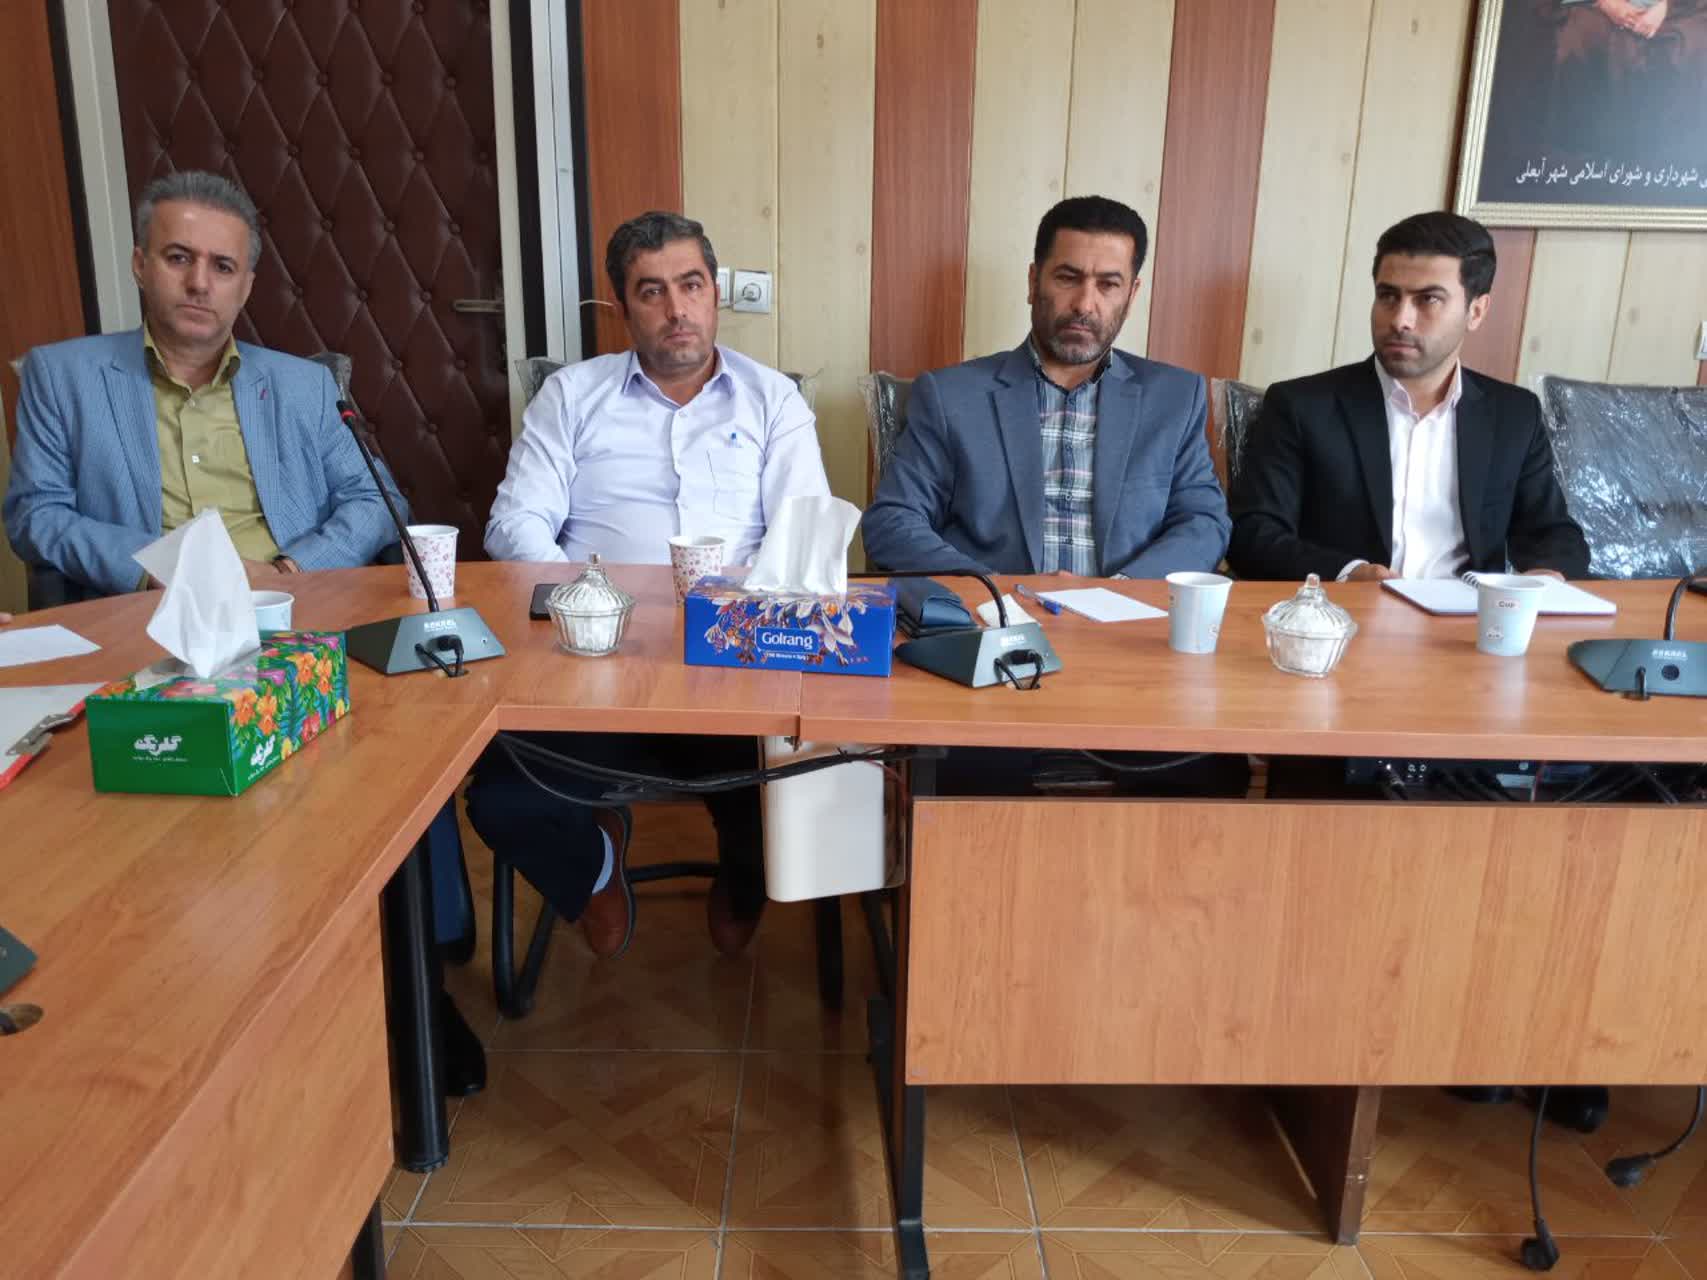 شورای اداری شهرداری آبعلی با محوریت بررسی برنامه ها و پروژه های مهر ماه برگزار شد .